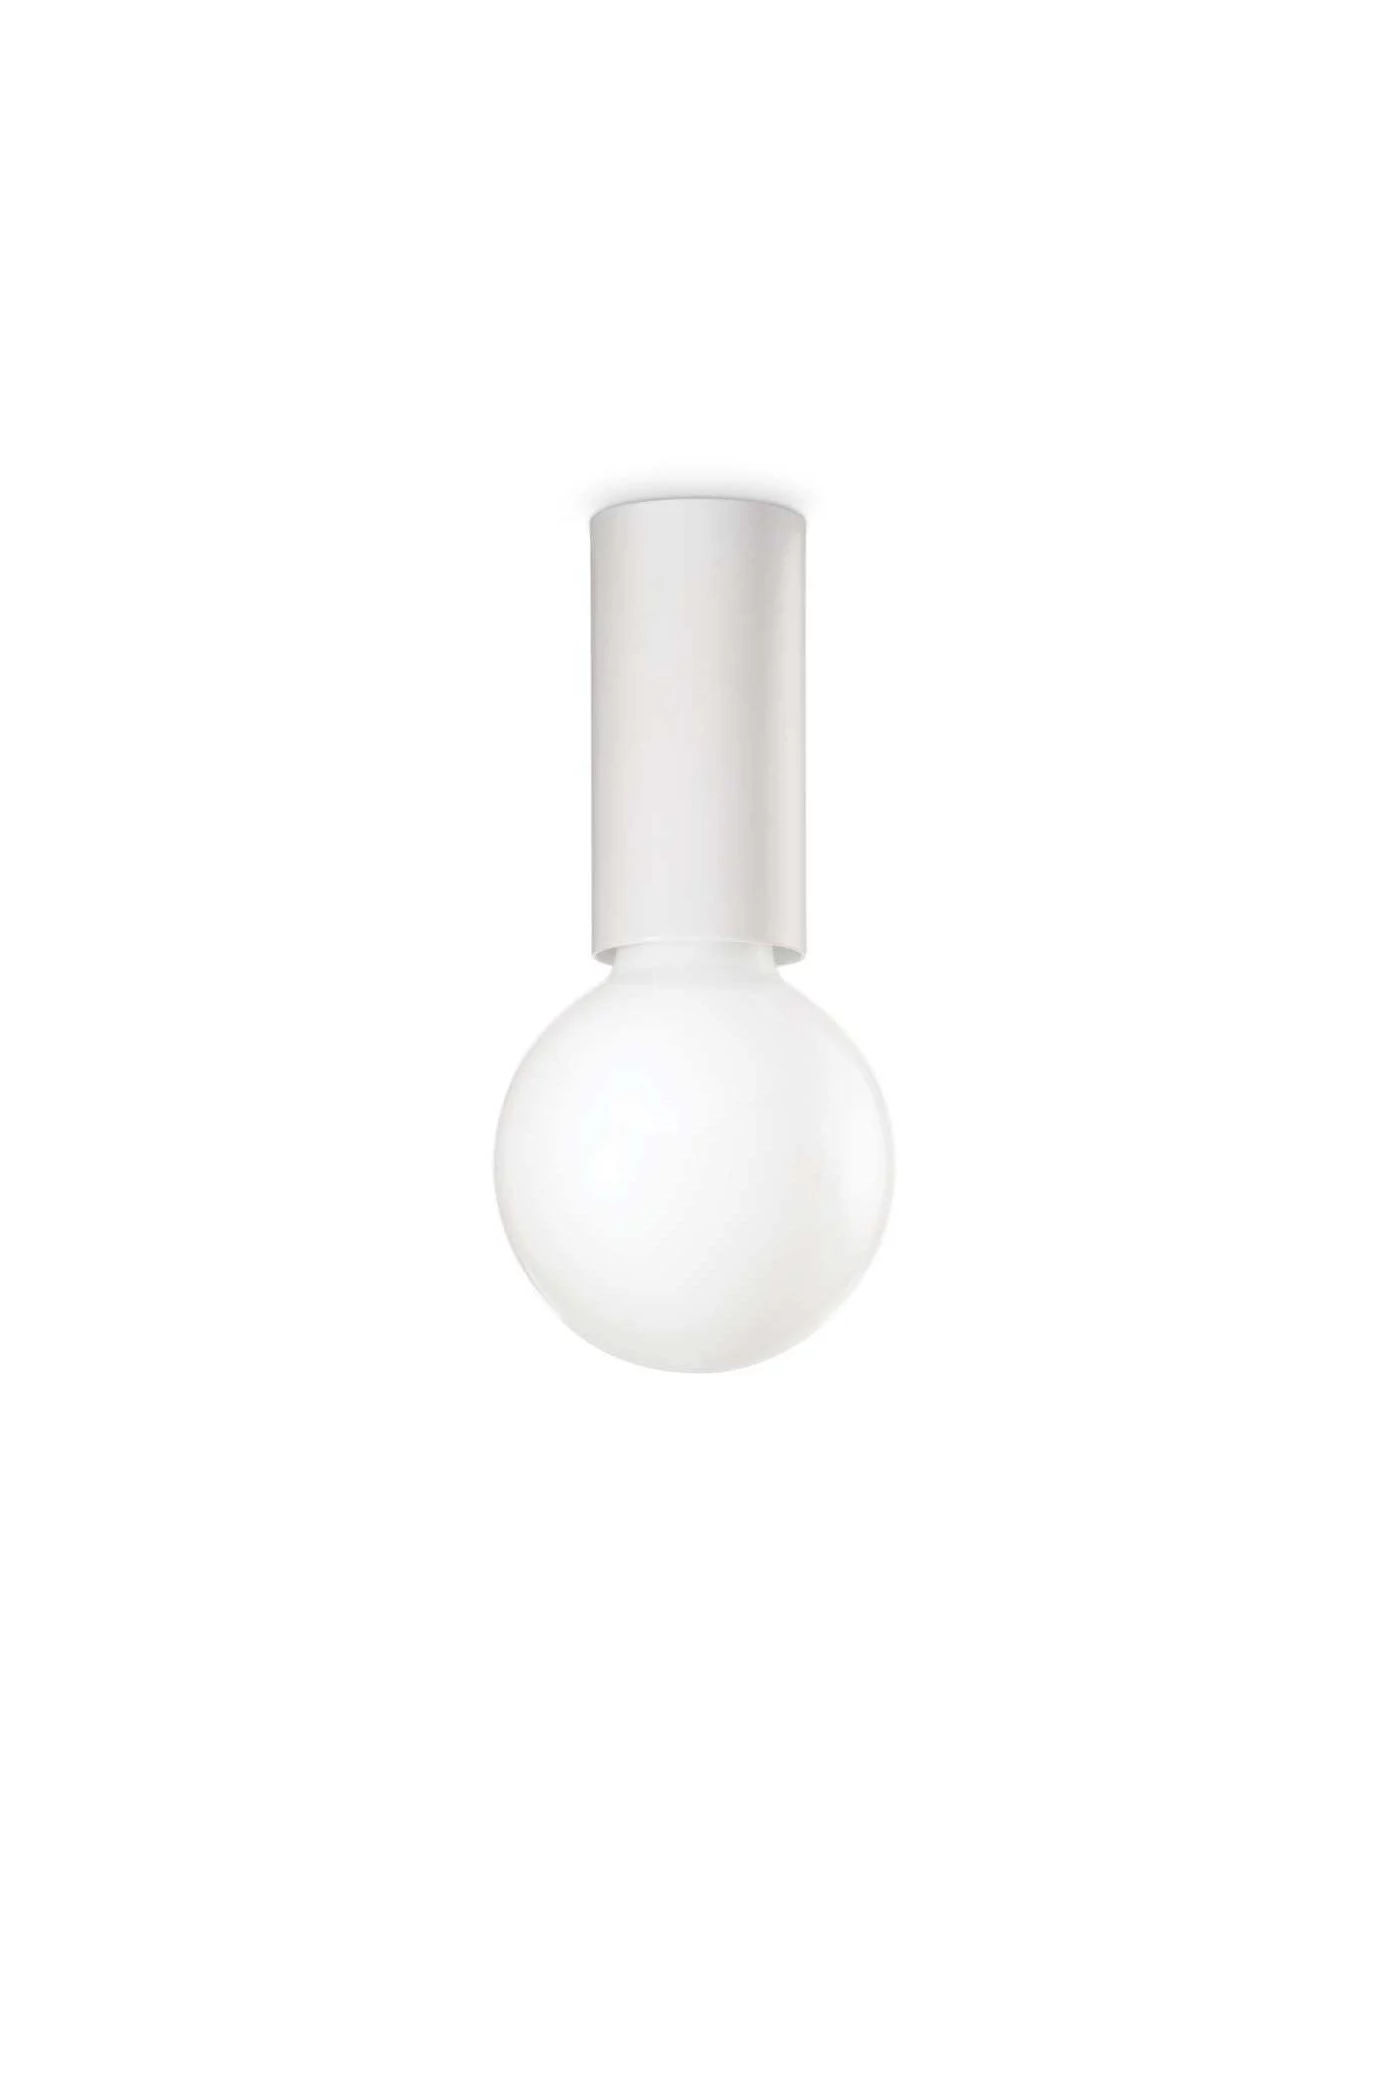   
                        Точковий світильник IDEAL LUX (Італія) 43213    
                         у стилі Хай-тек.  
                        Тип джерела світла: cвітлодіодні led, енергозберігаючі, розжарювання.                         Форма: Коло.                                                                          фото 1